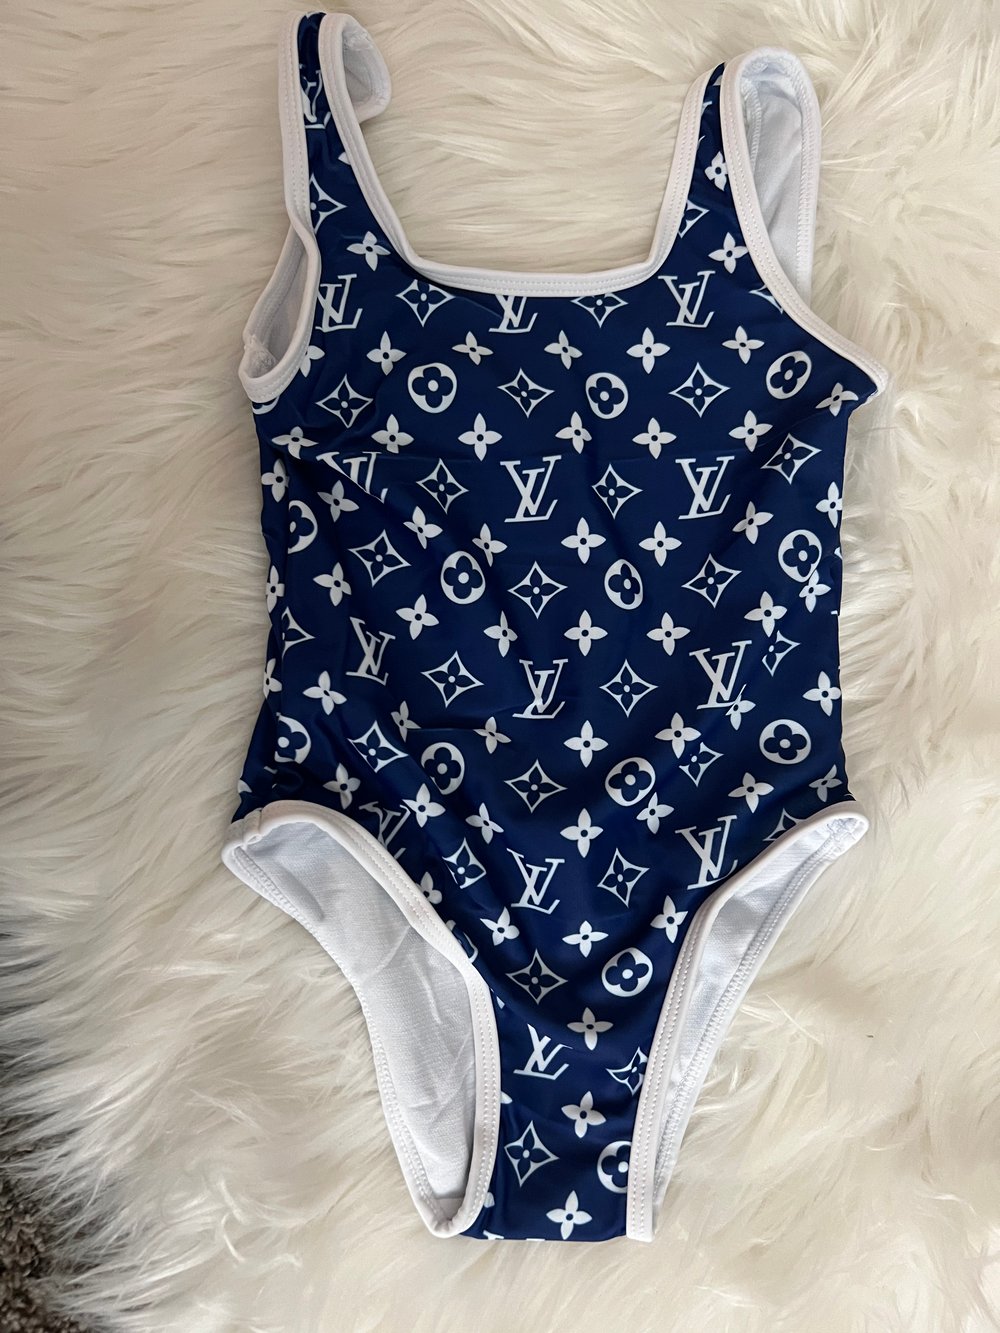 Blue&white Louis Vuitton bathing suit